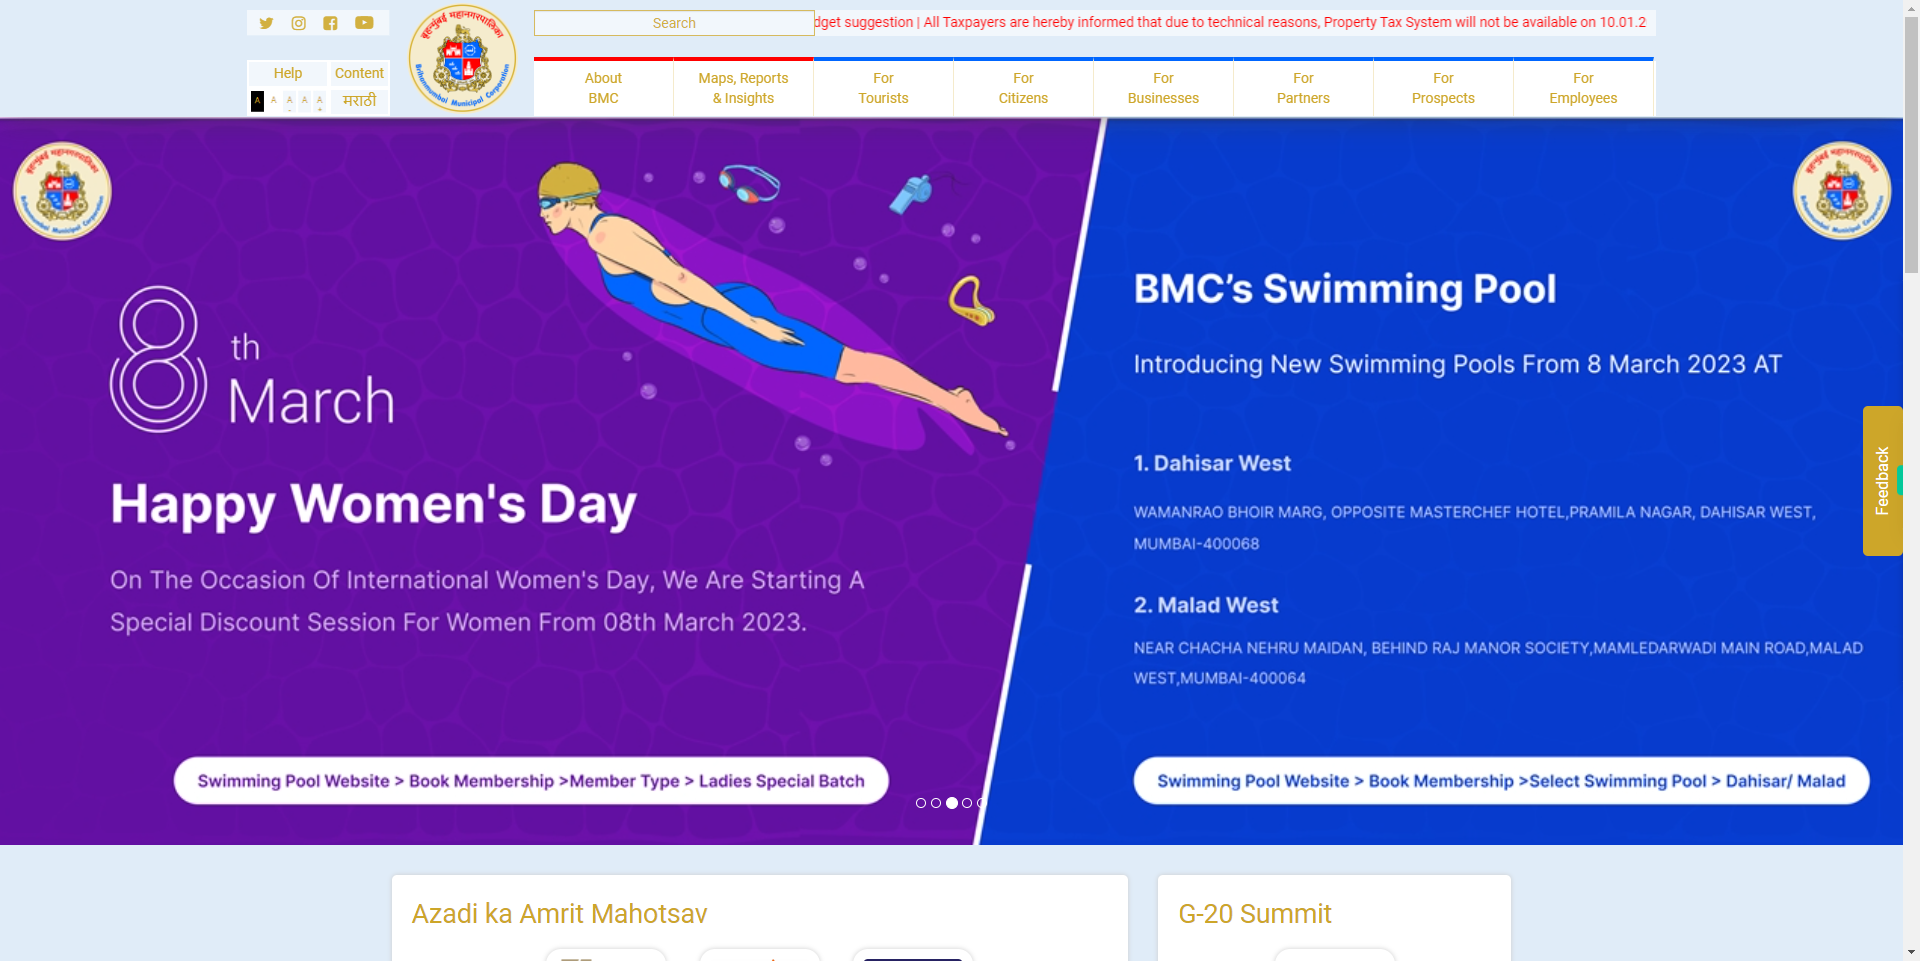 About Mumbai - MyBMC - Welcome to BMC's Website